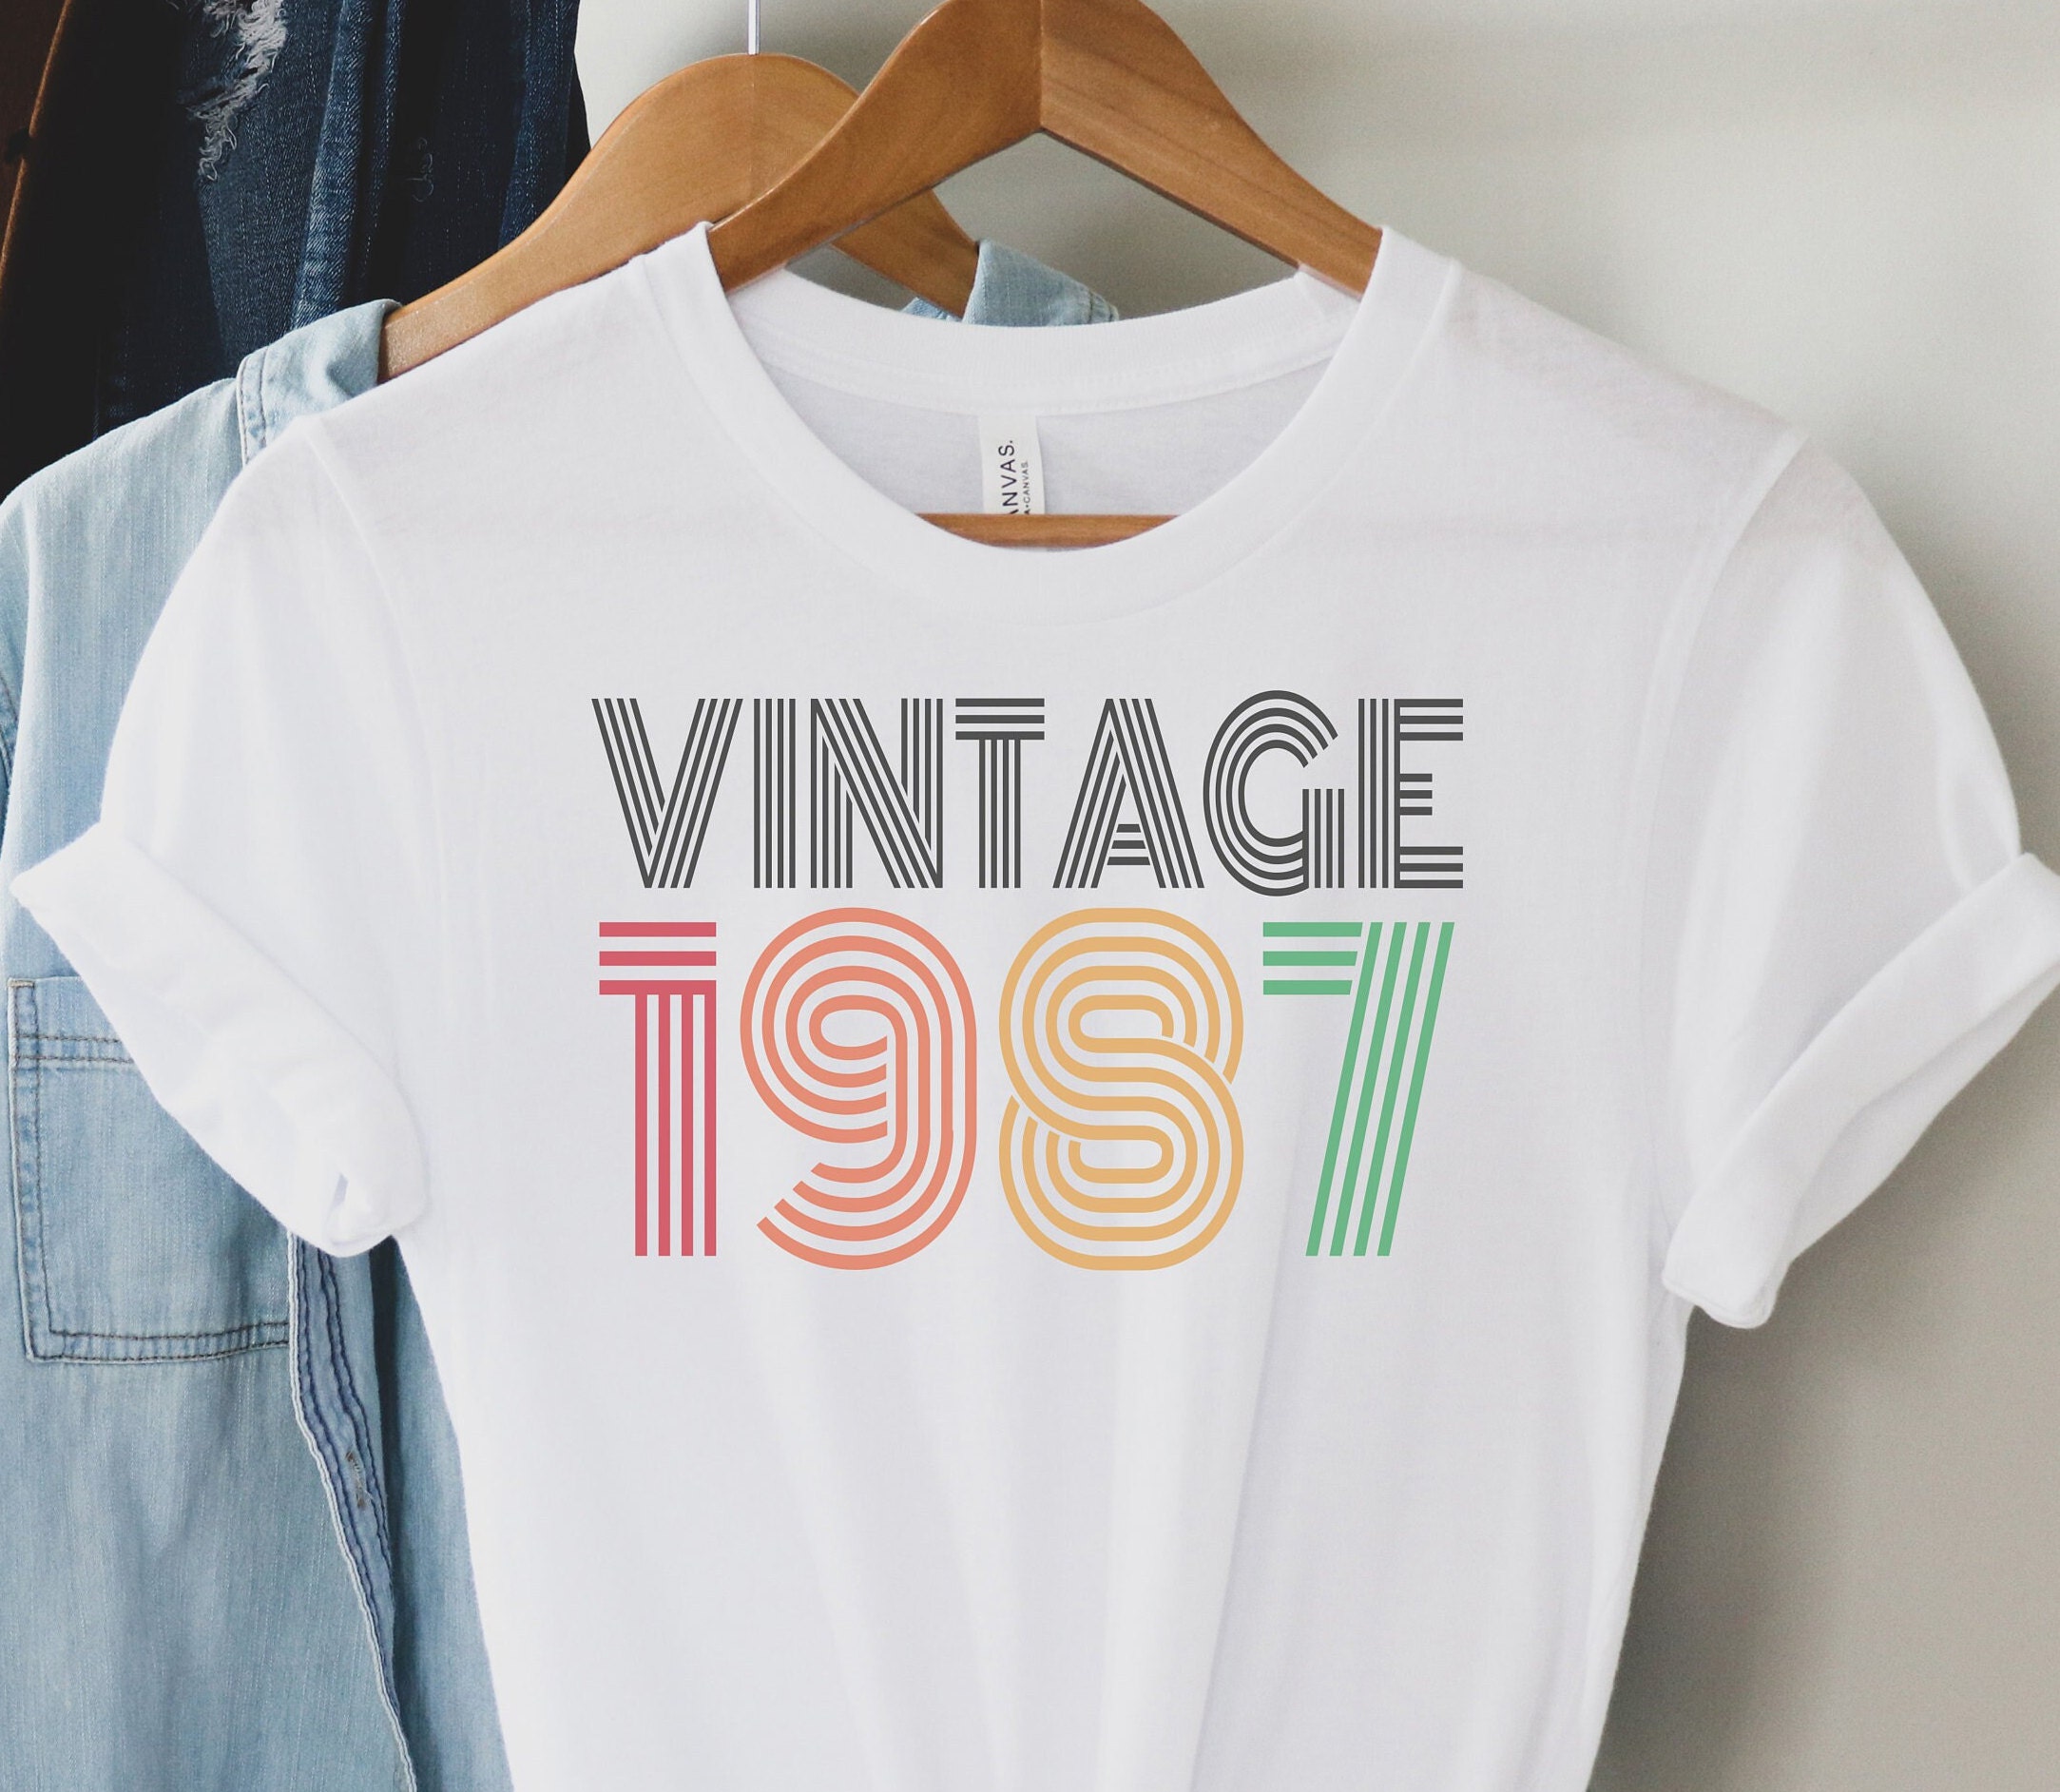 Vintage 1987 Shirt 35th Birthday Shirt 35th Birthday Gift | Etsy